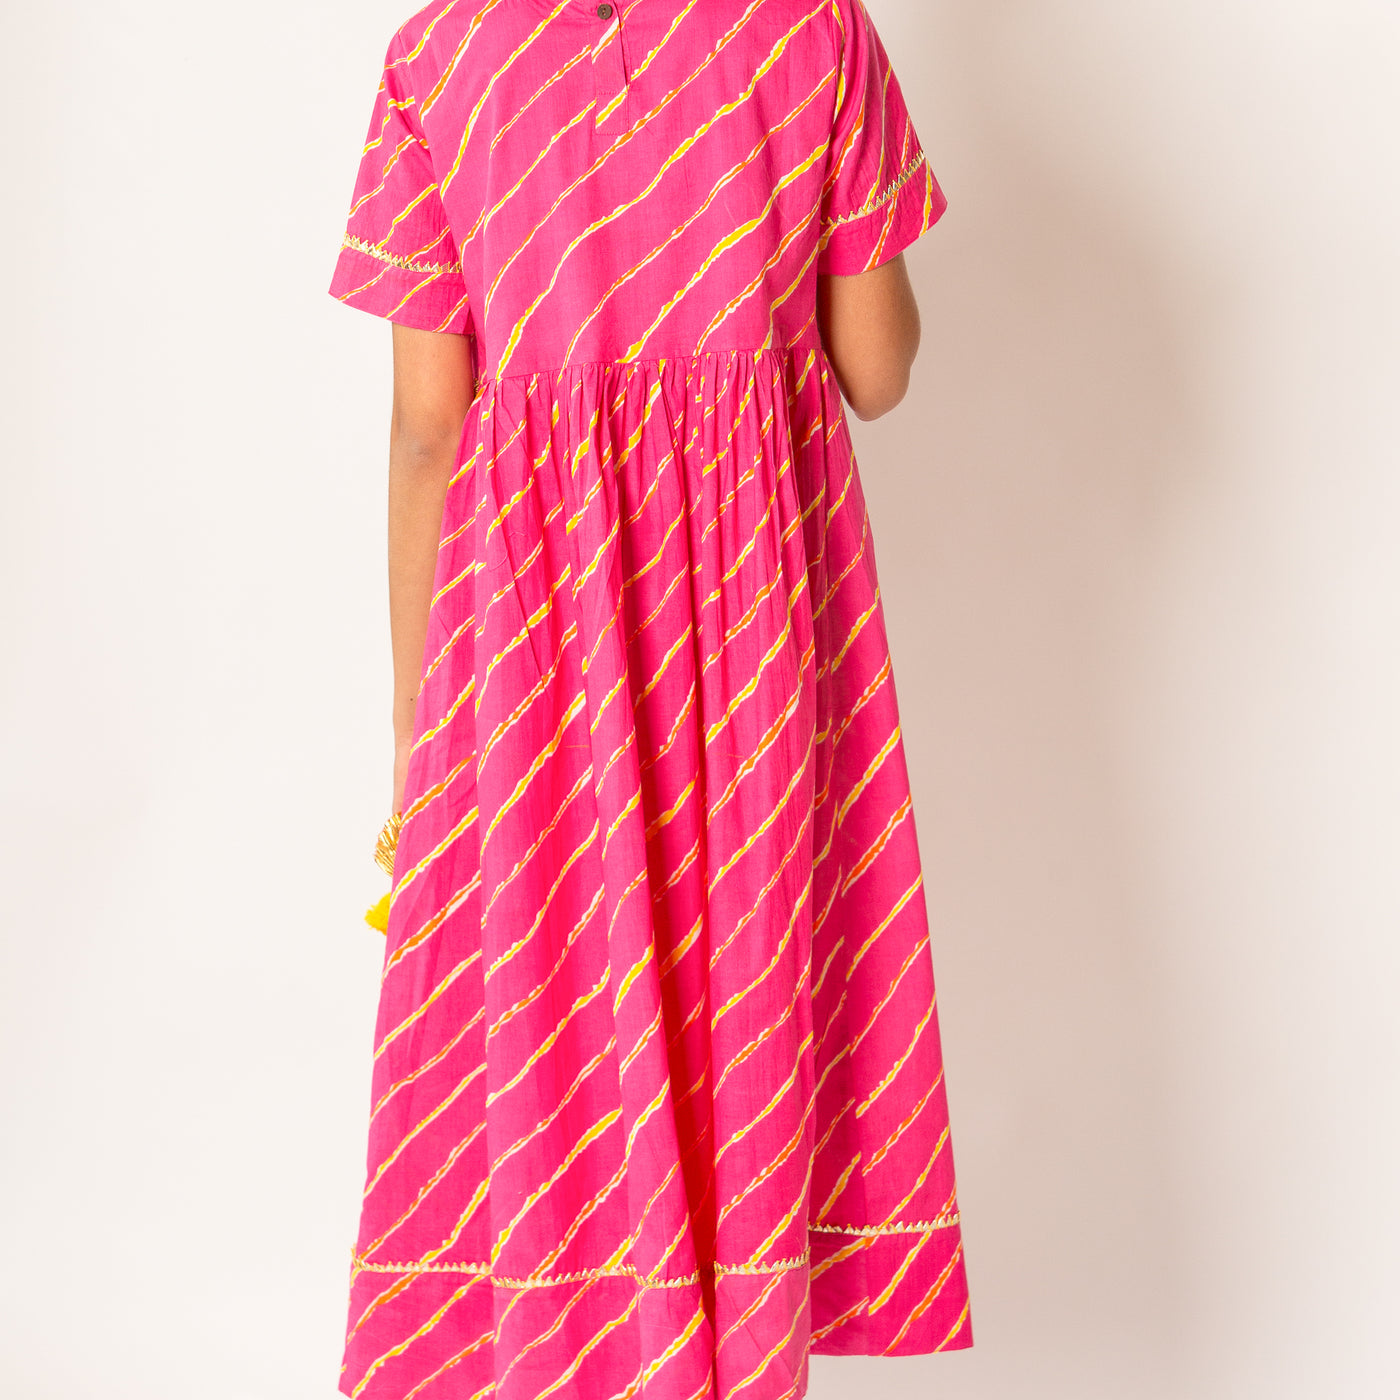 Saachi - Girls Pink & Yellow Leheriya Ankle Length Ethnic Gota Dress with Pom Pom